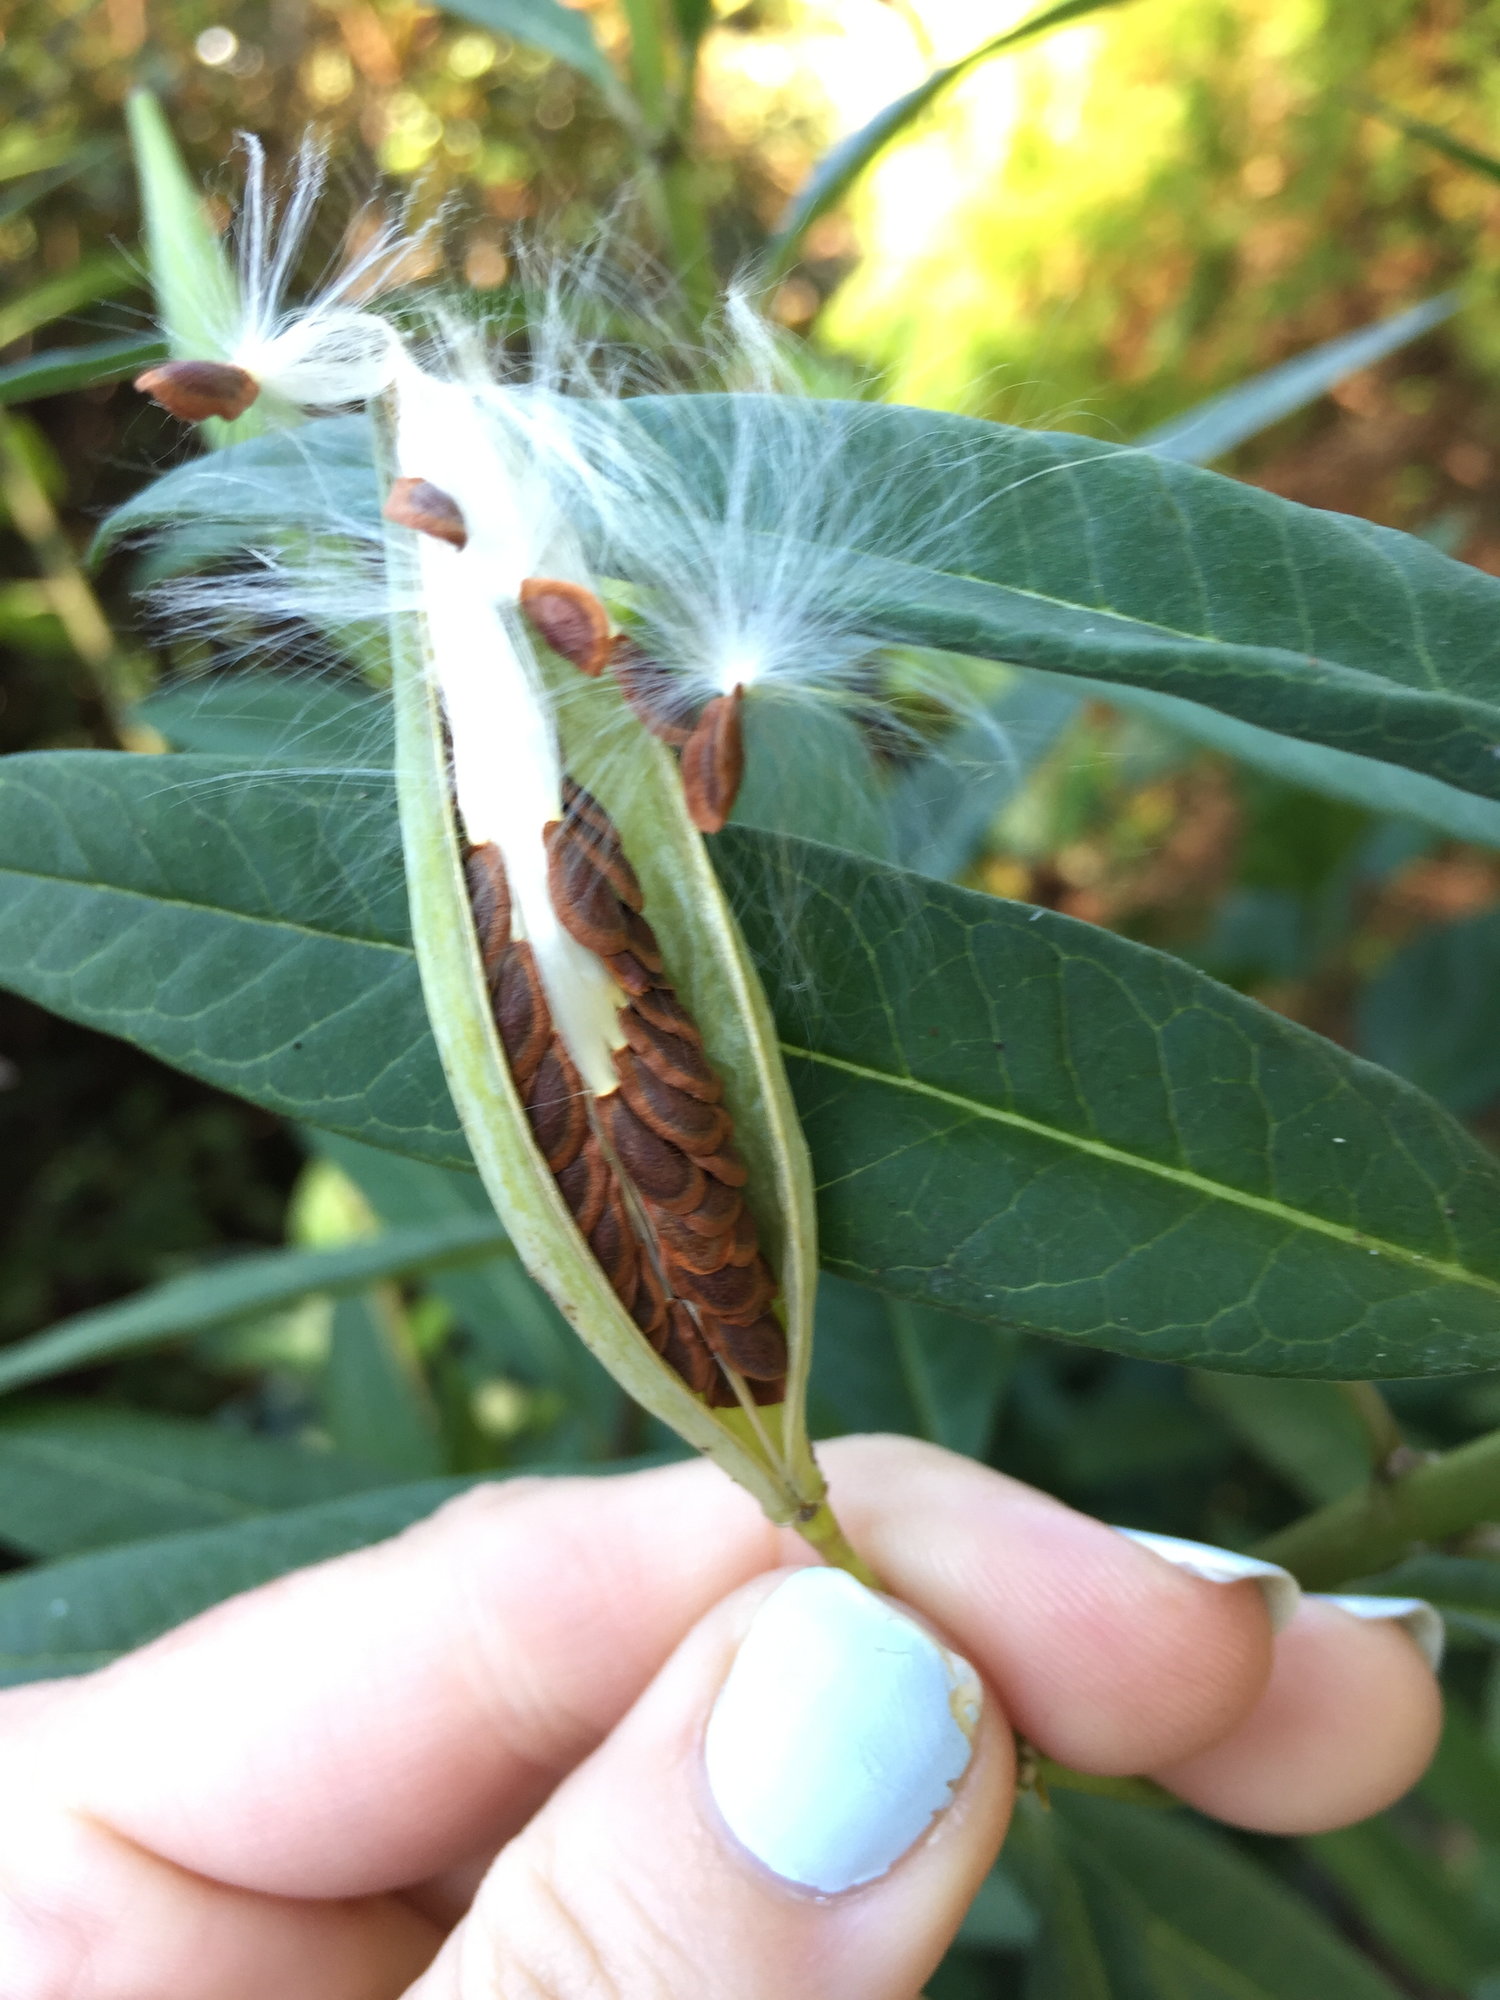 What Do Milkweed Seeds Look Like